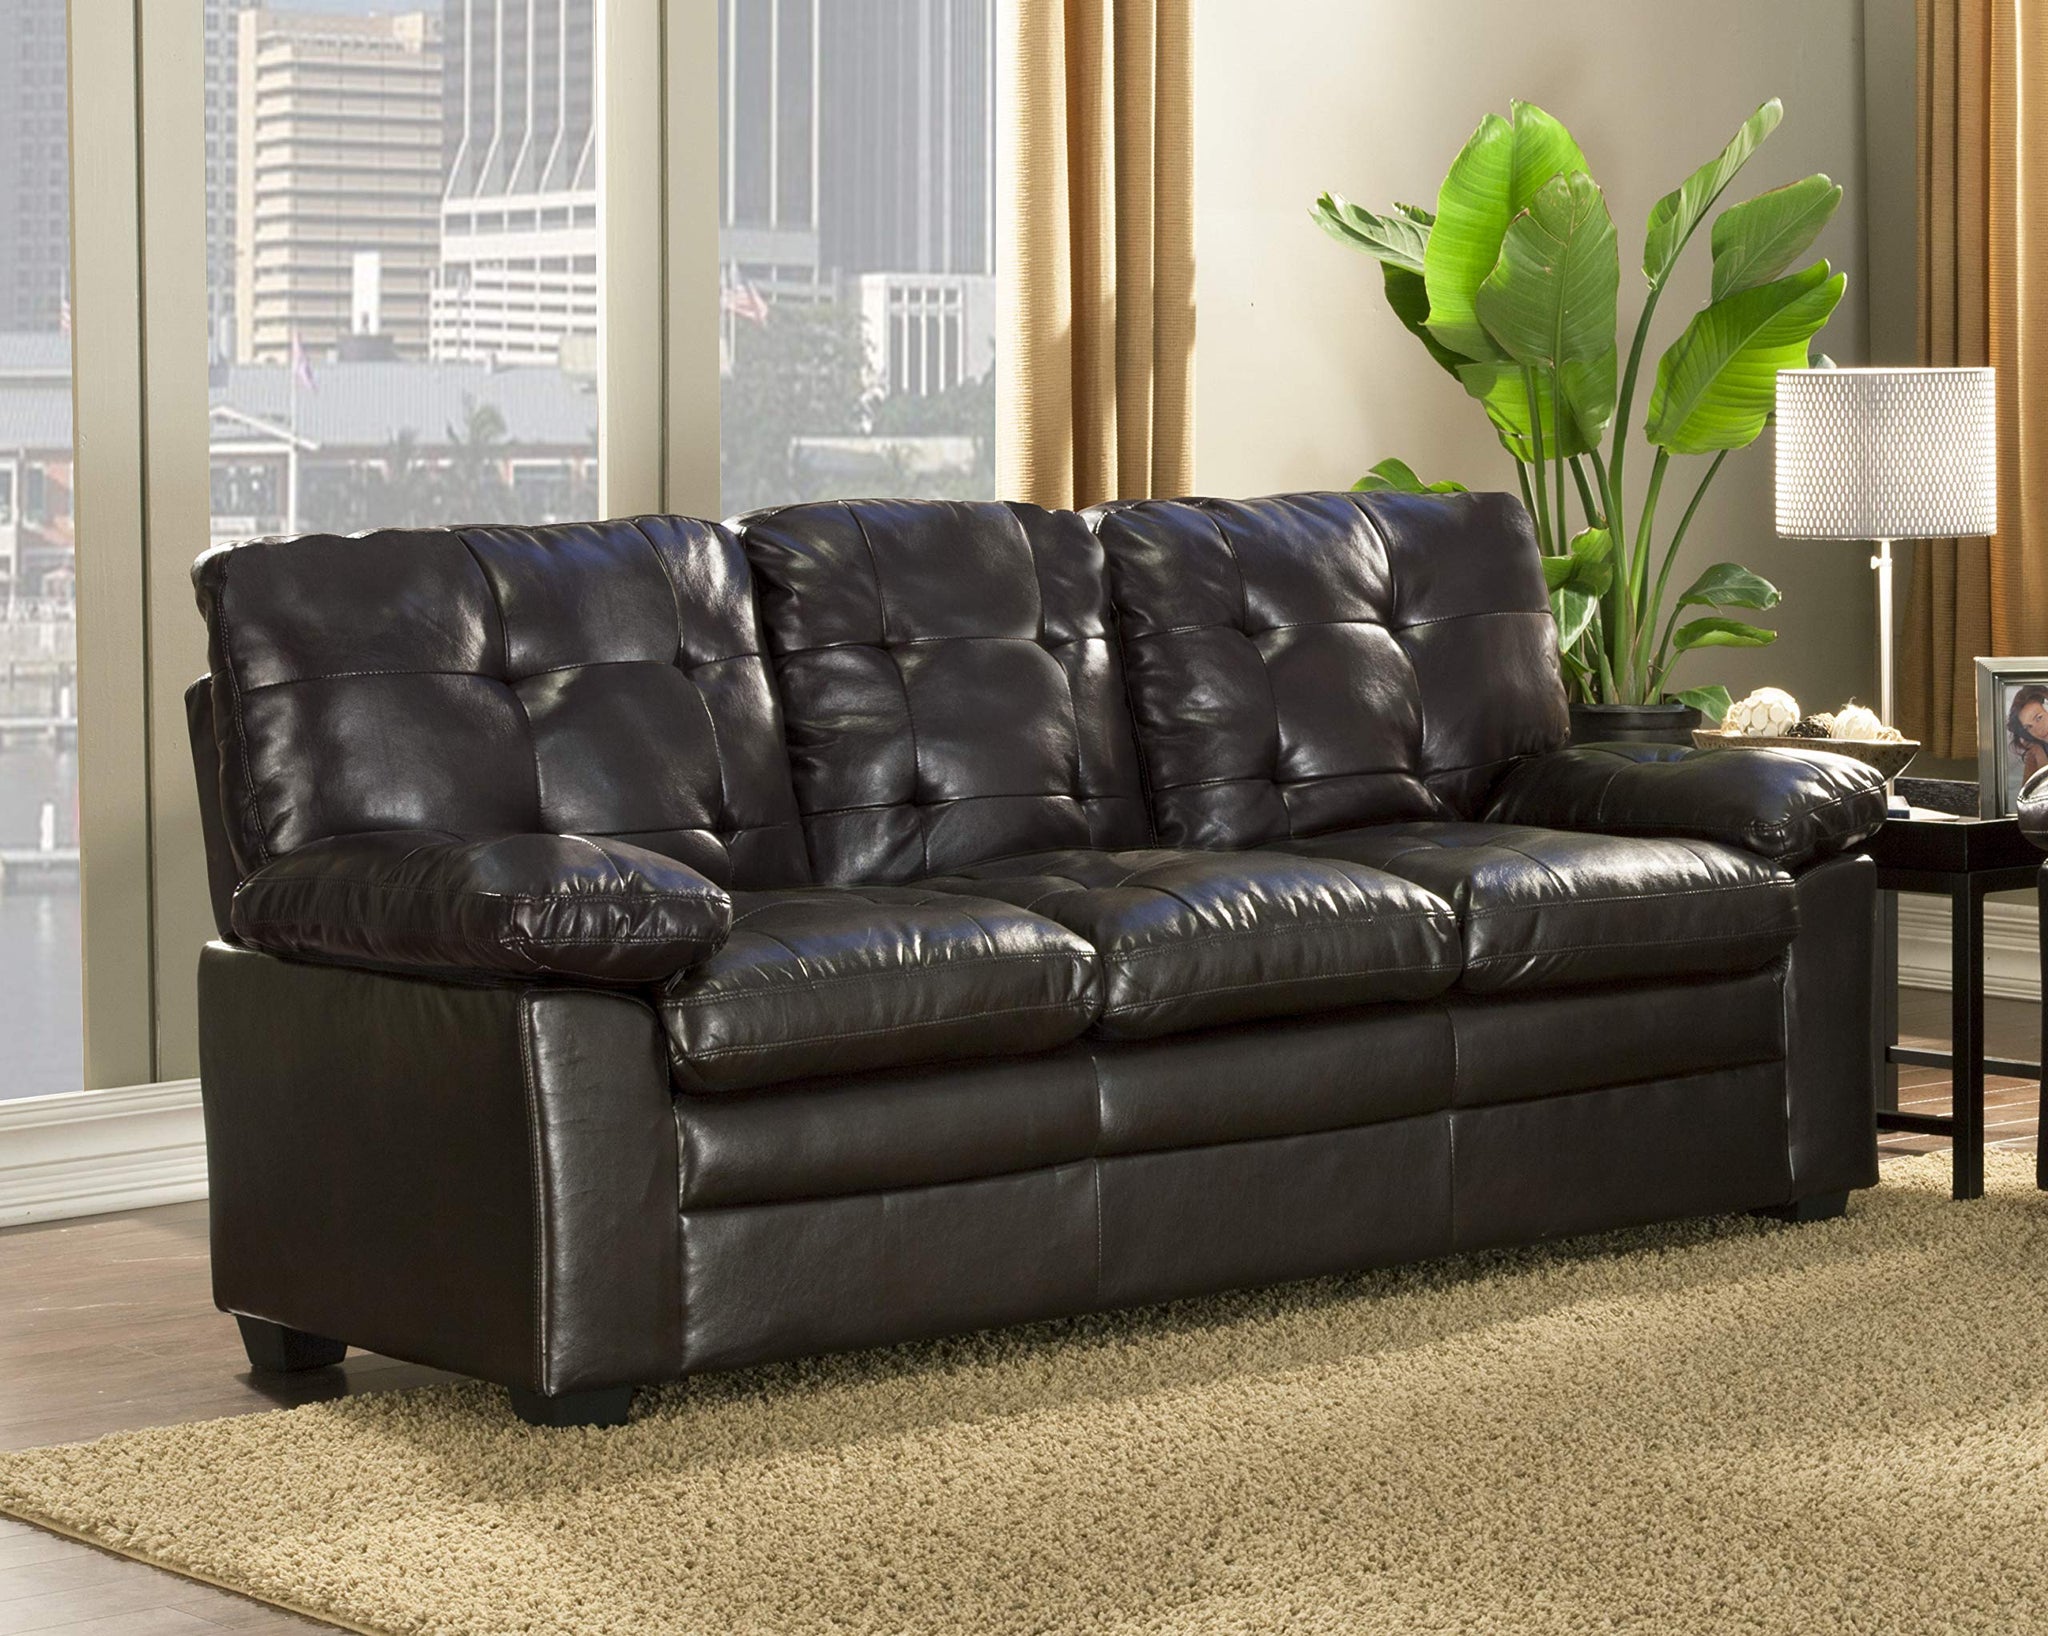 GTU Furniture Black Pu Leather Sofa